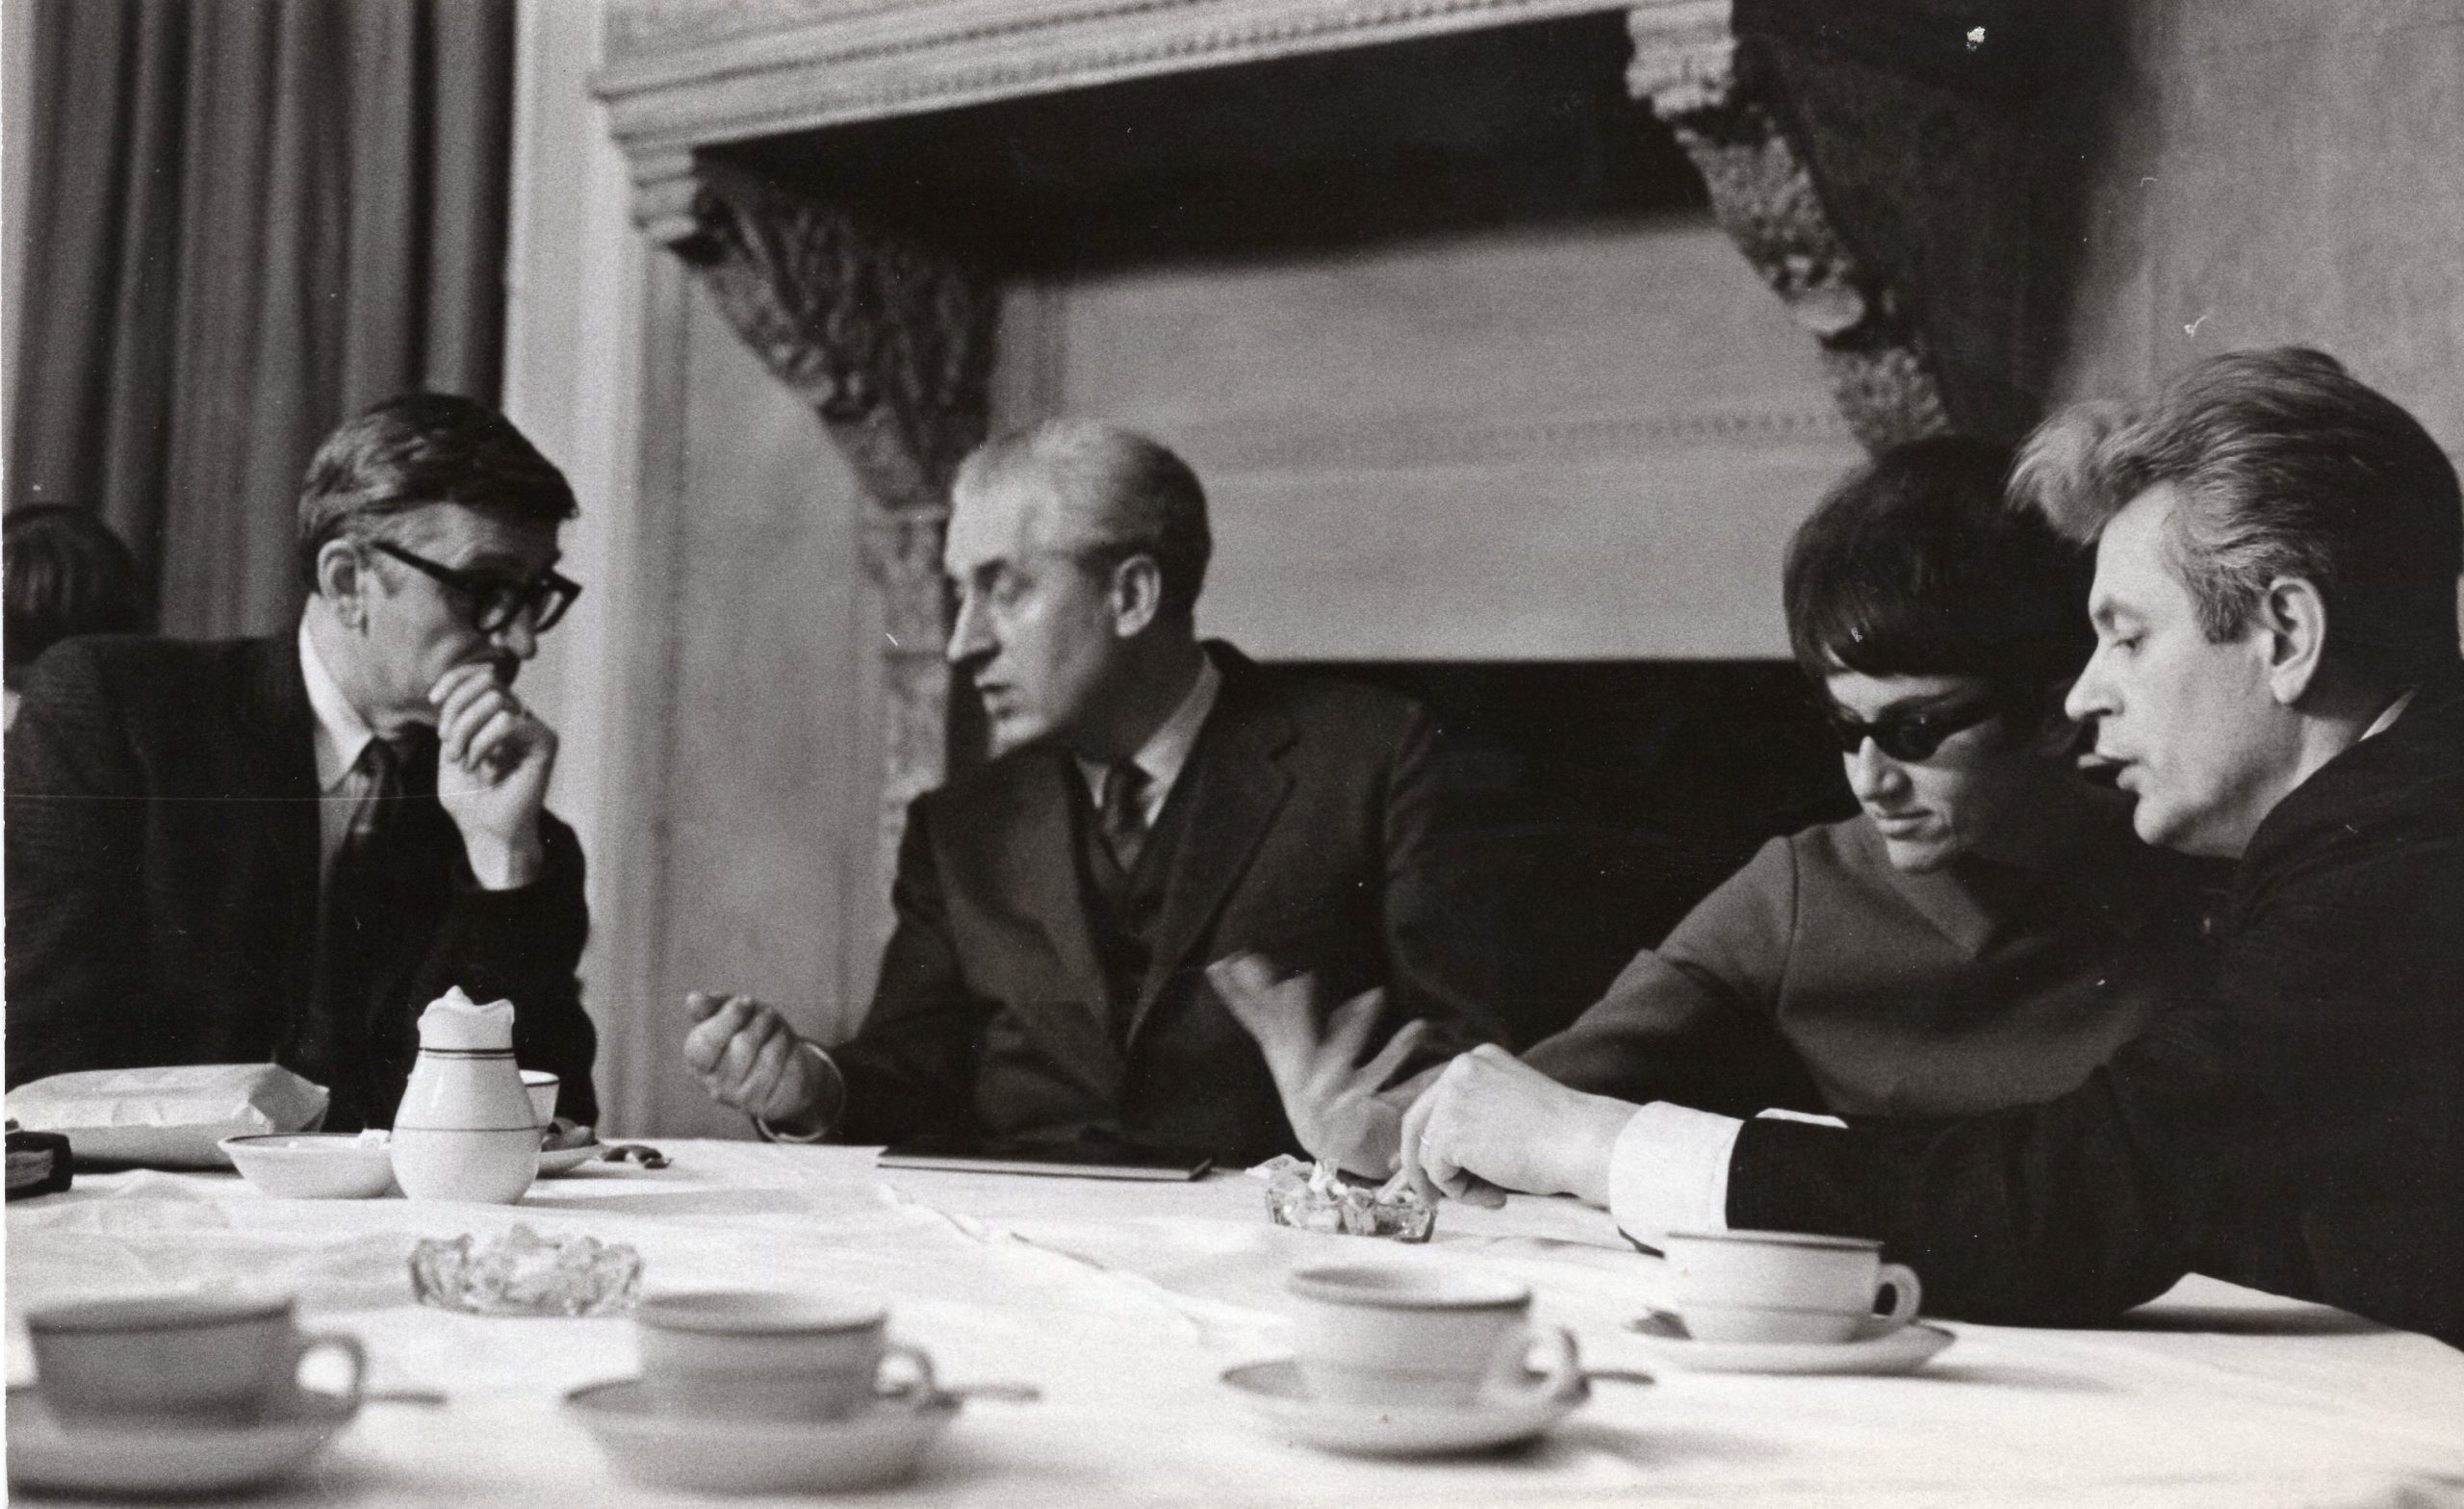 Diskusijos po K. Ostrausko „Pypkės“ ir A. Landsbergio „Barzdos“ pristatymo Niujorke, 1967 m. Iš kairės A. Landsbergis, V. Valiukas, D. Juknevičiūtė ir K. Ostrauskas. G. Naujokaičio nuotrauka